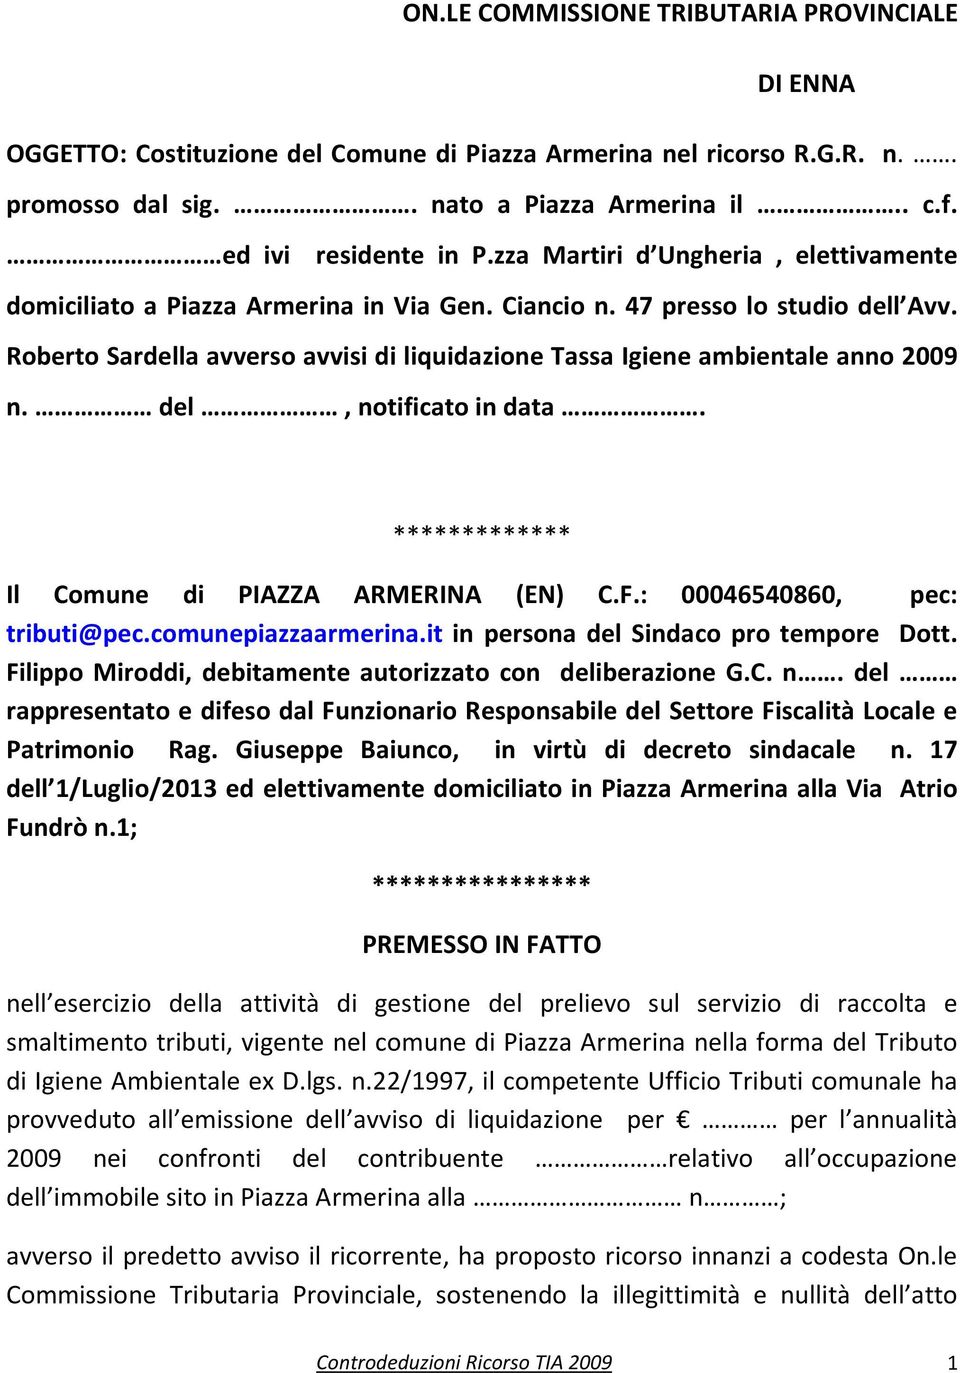 Roberto Sardella avverso avvisi di liquidazione Tassa Igiene ambientale anno 2009 n. del, notificato in data. ************* Il Comune di PIAZZA ARMERINA (EN) C.F.: 00046540860, pec: tributi@pec.